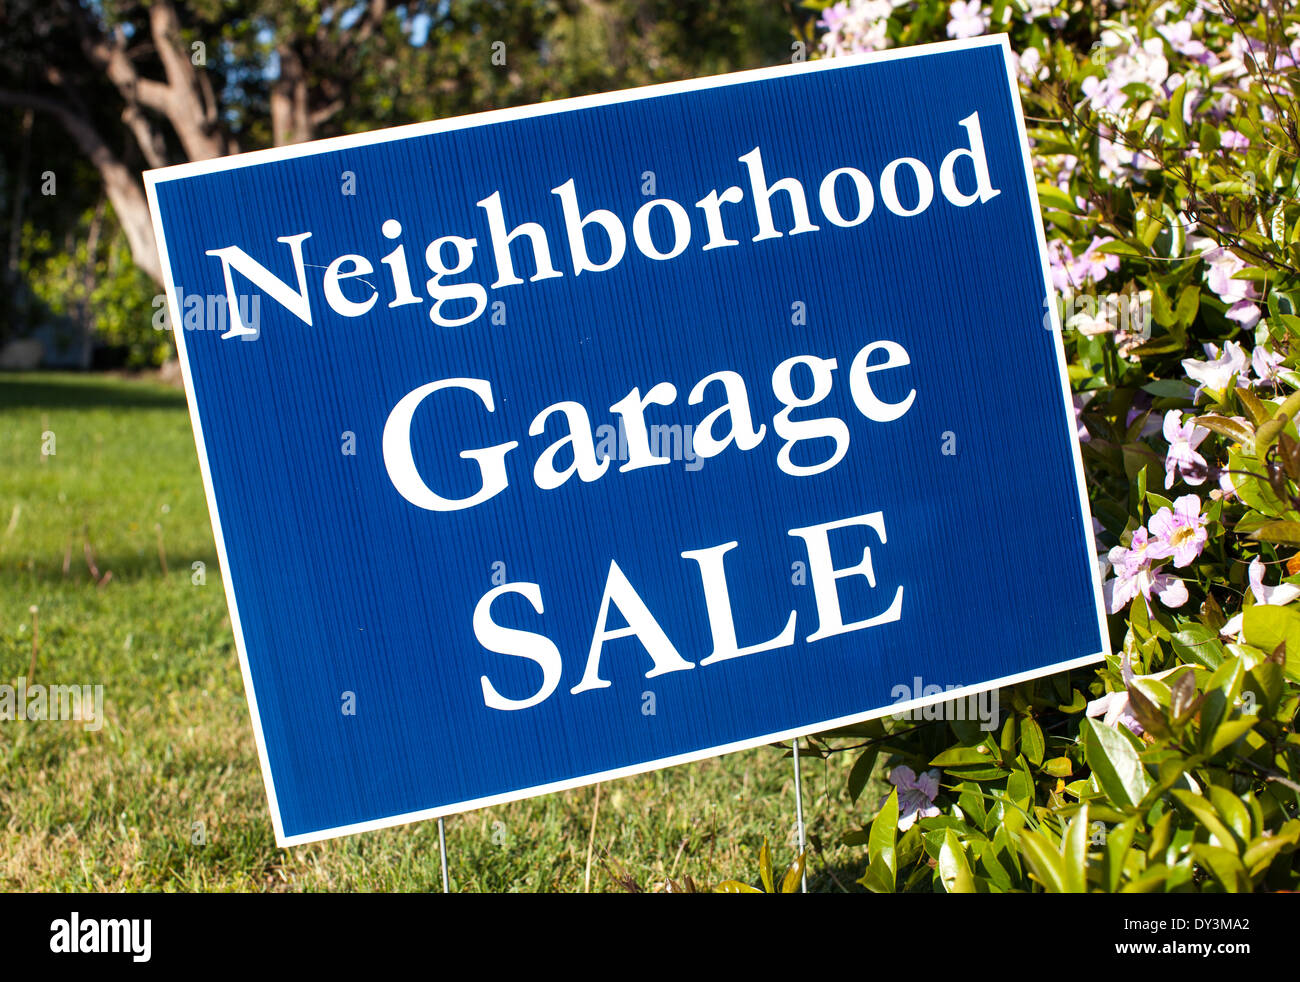 Neighborhood Garage Sale sign Stock Photo - Alamy